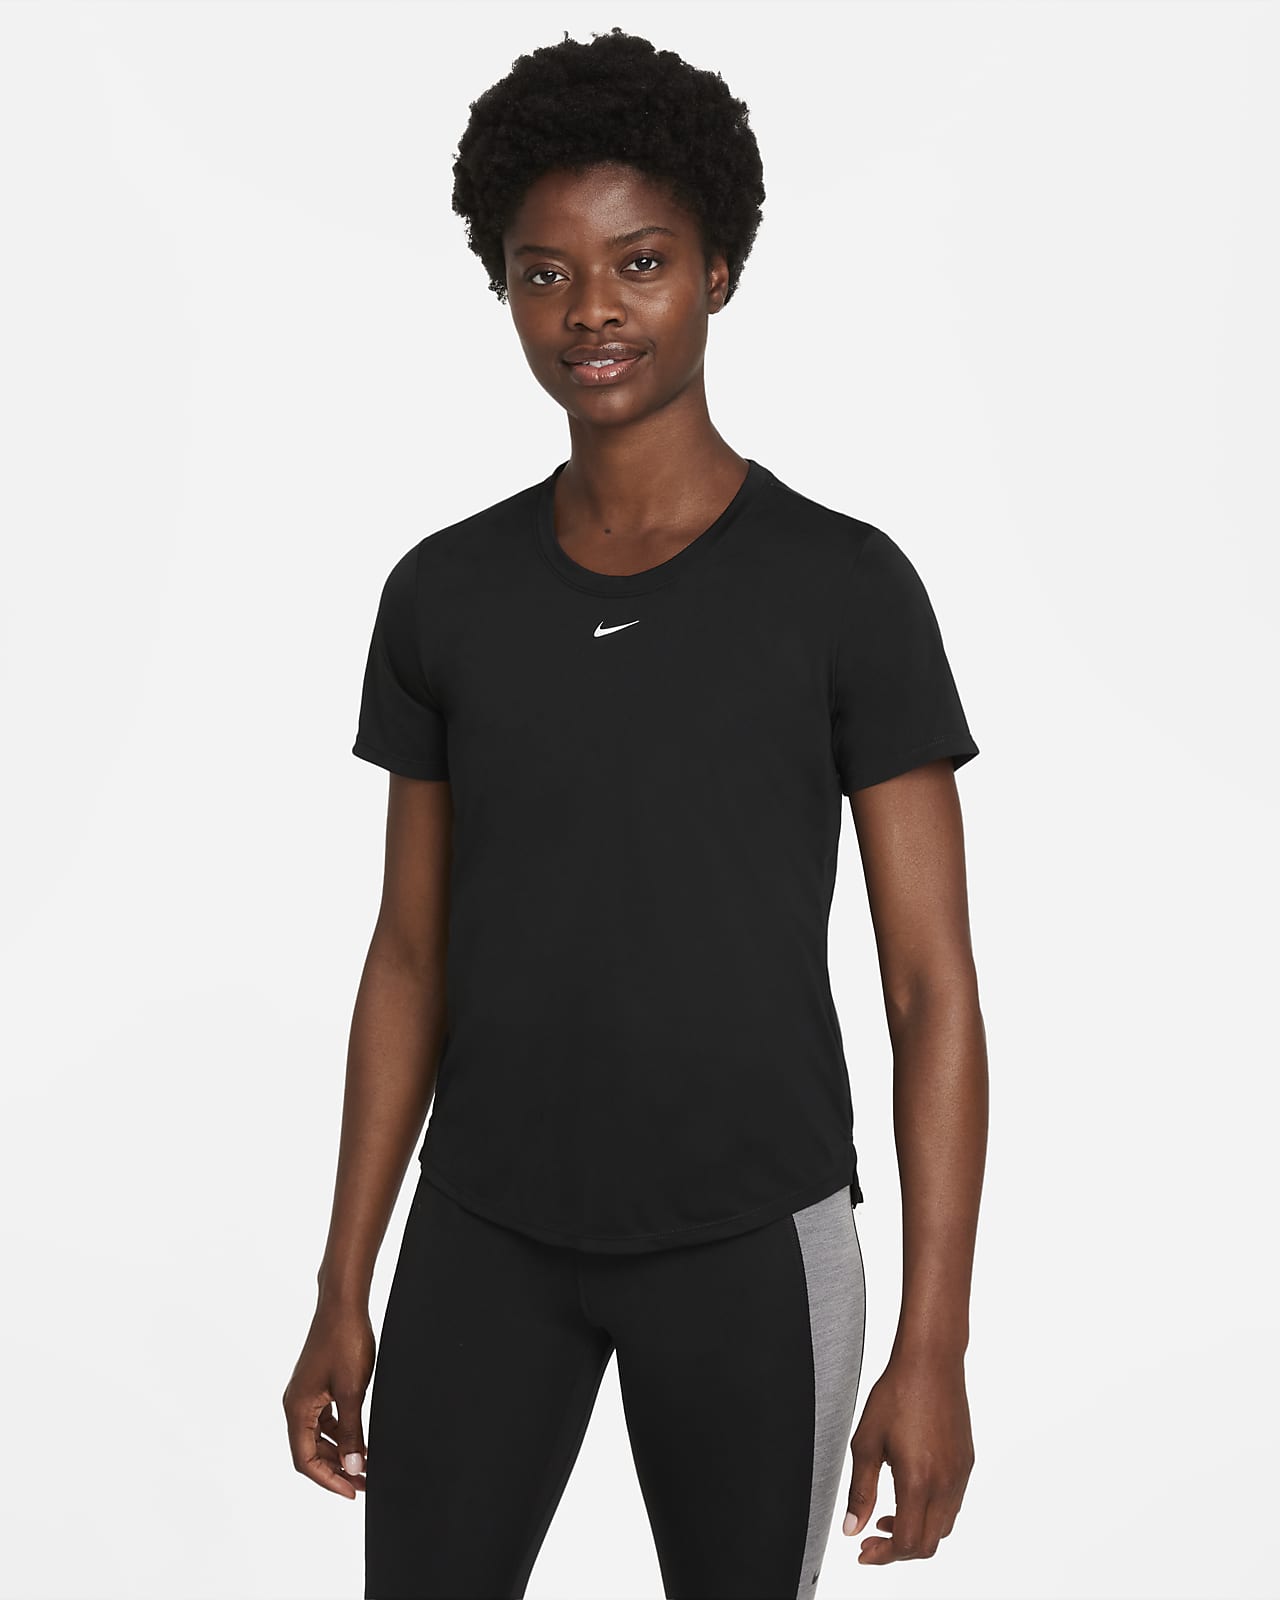 Γυναικεία κοντομάνικη μπλούζα με κανονική εφαρμογή Nike Dri-FIT One